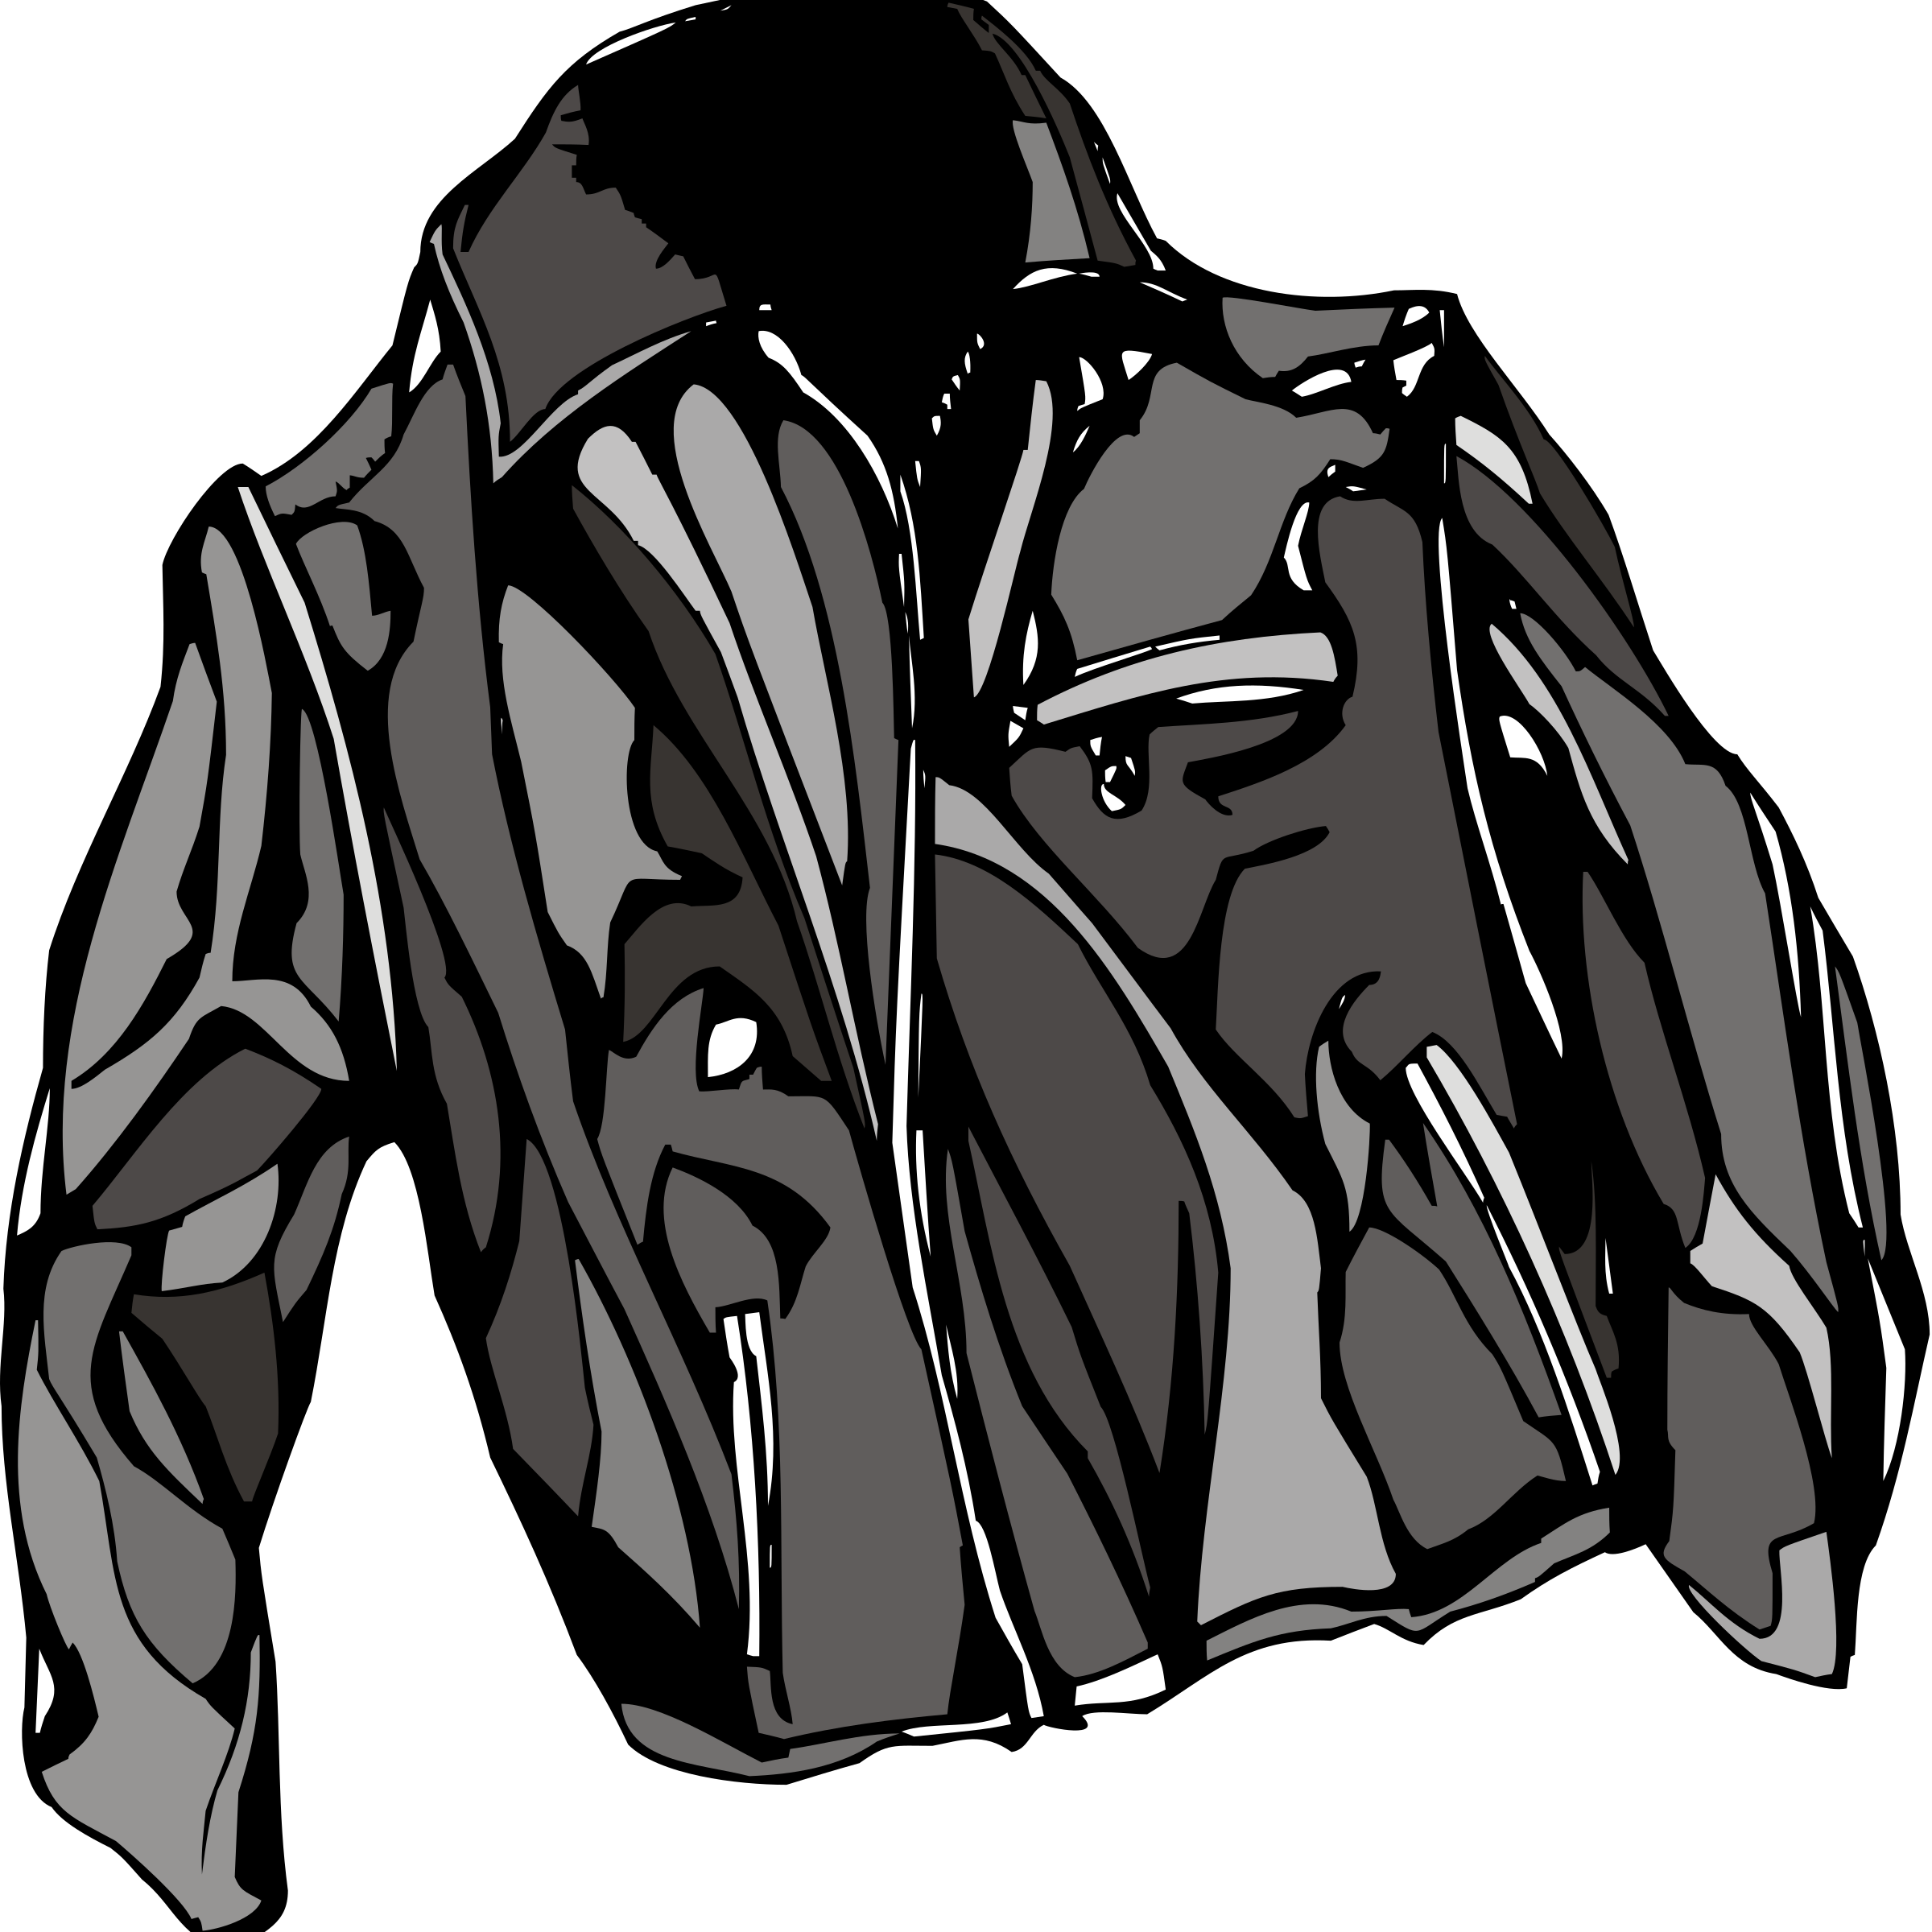 Jacket illustration download